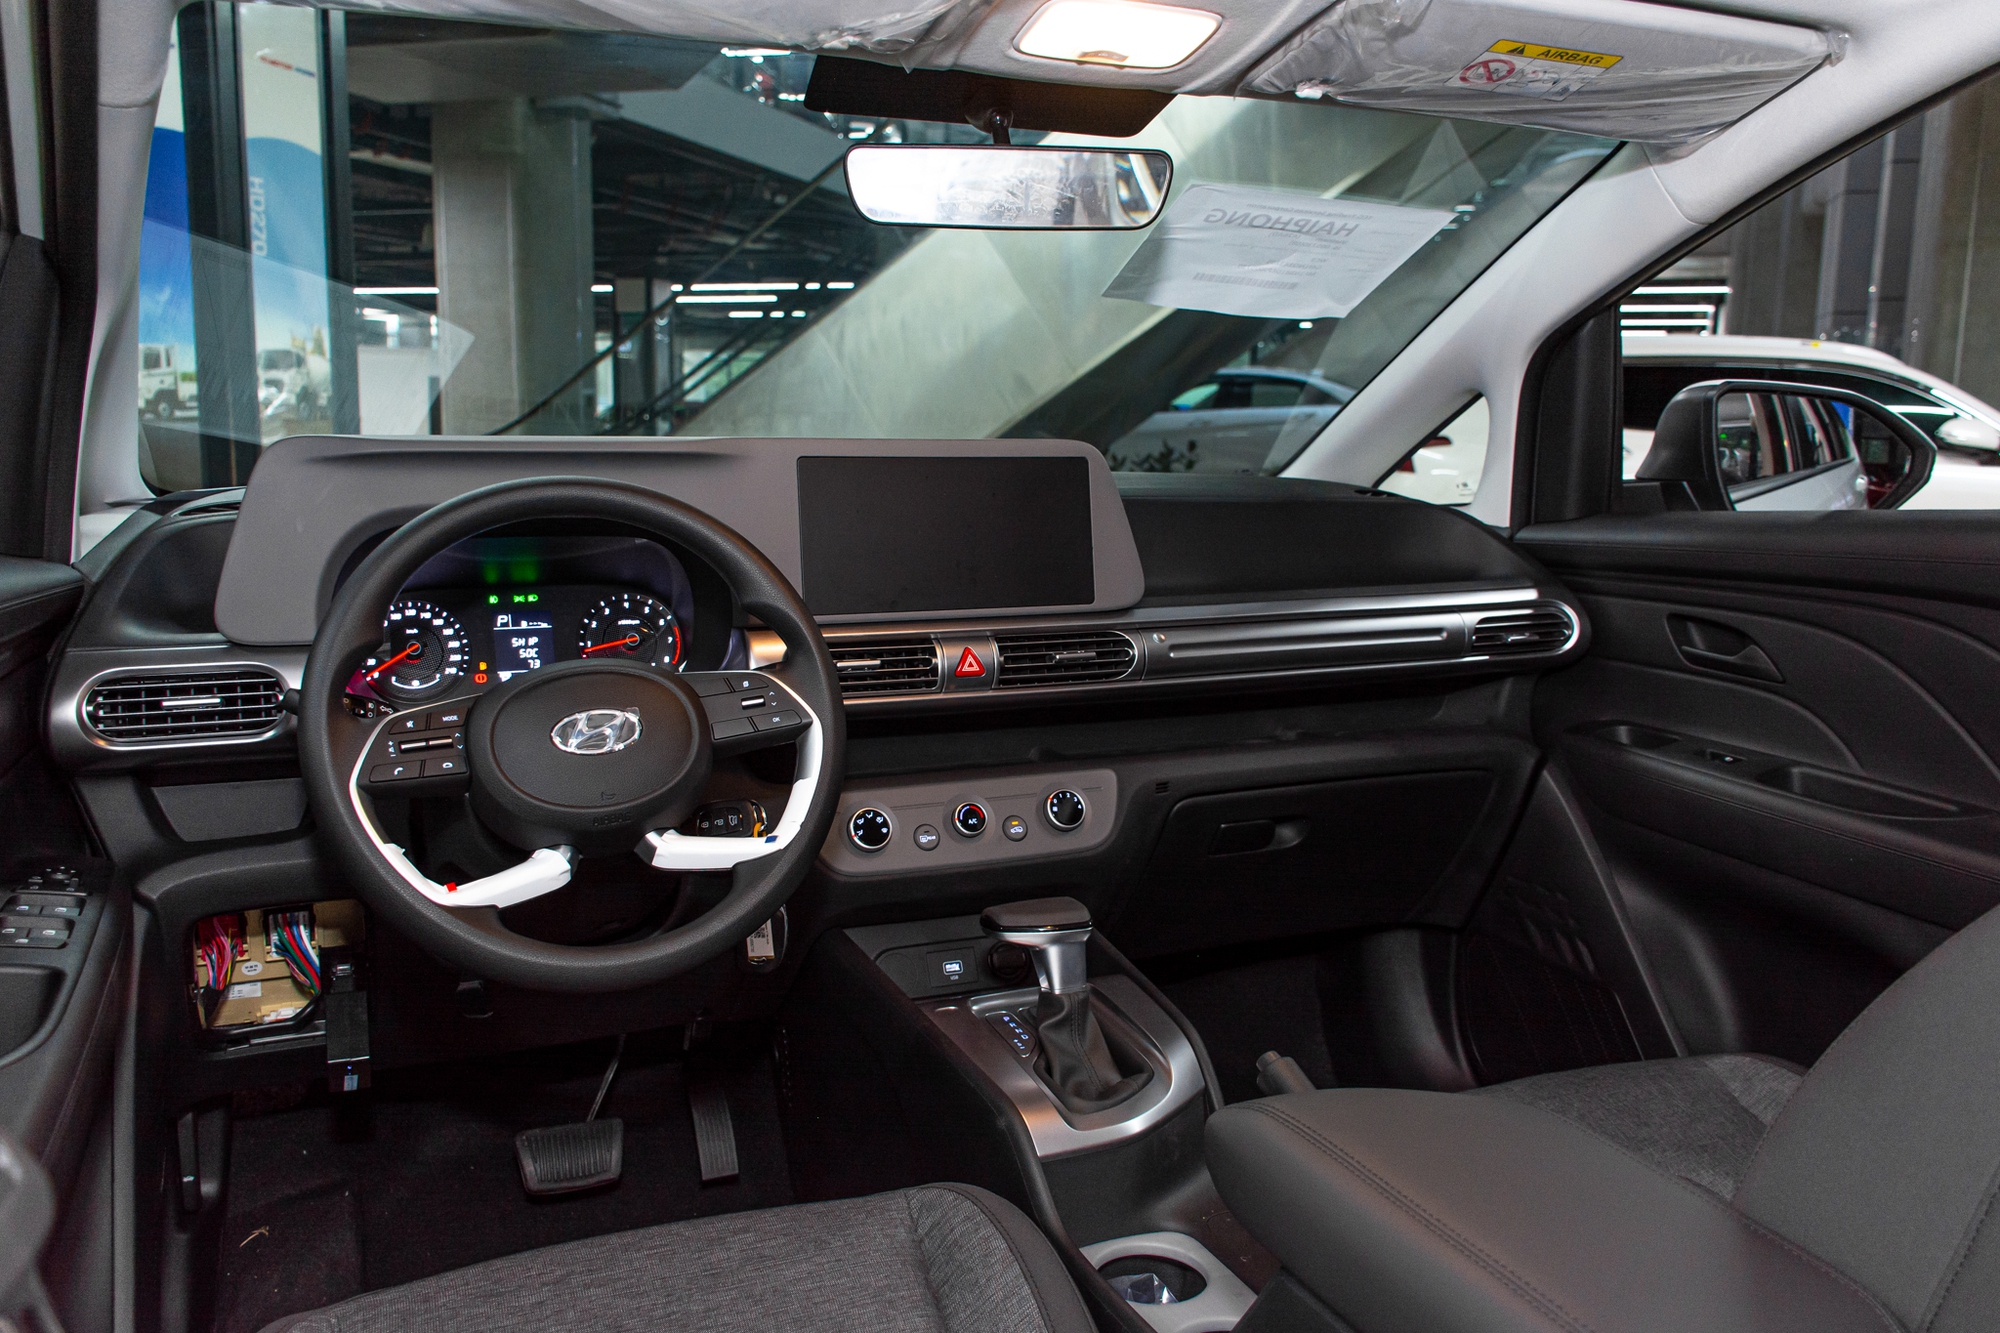 Xem Hyundai Stargazer phiên bản rẻ nhất: Nhắm tới tệp tài xế dịch vụ nhưng thiếu nhiều trang bị cơ bản - Ảnh 6.